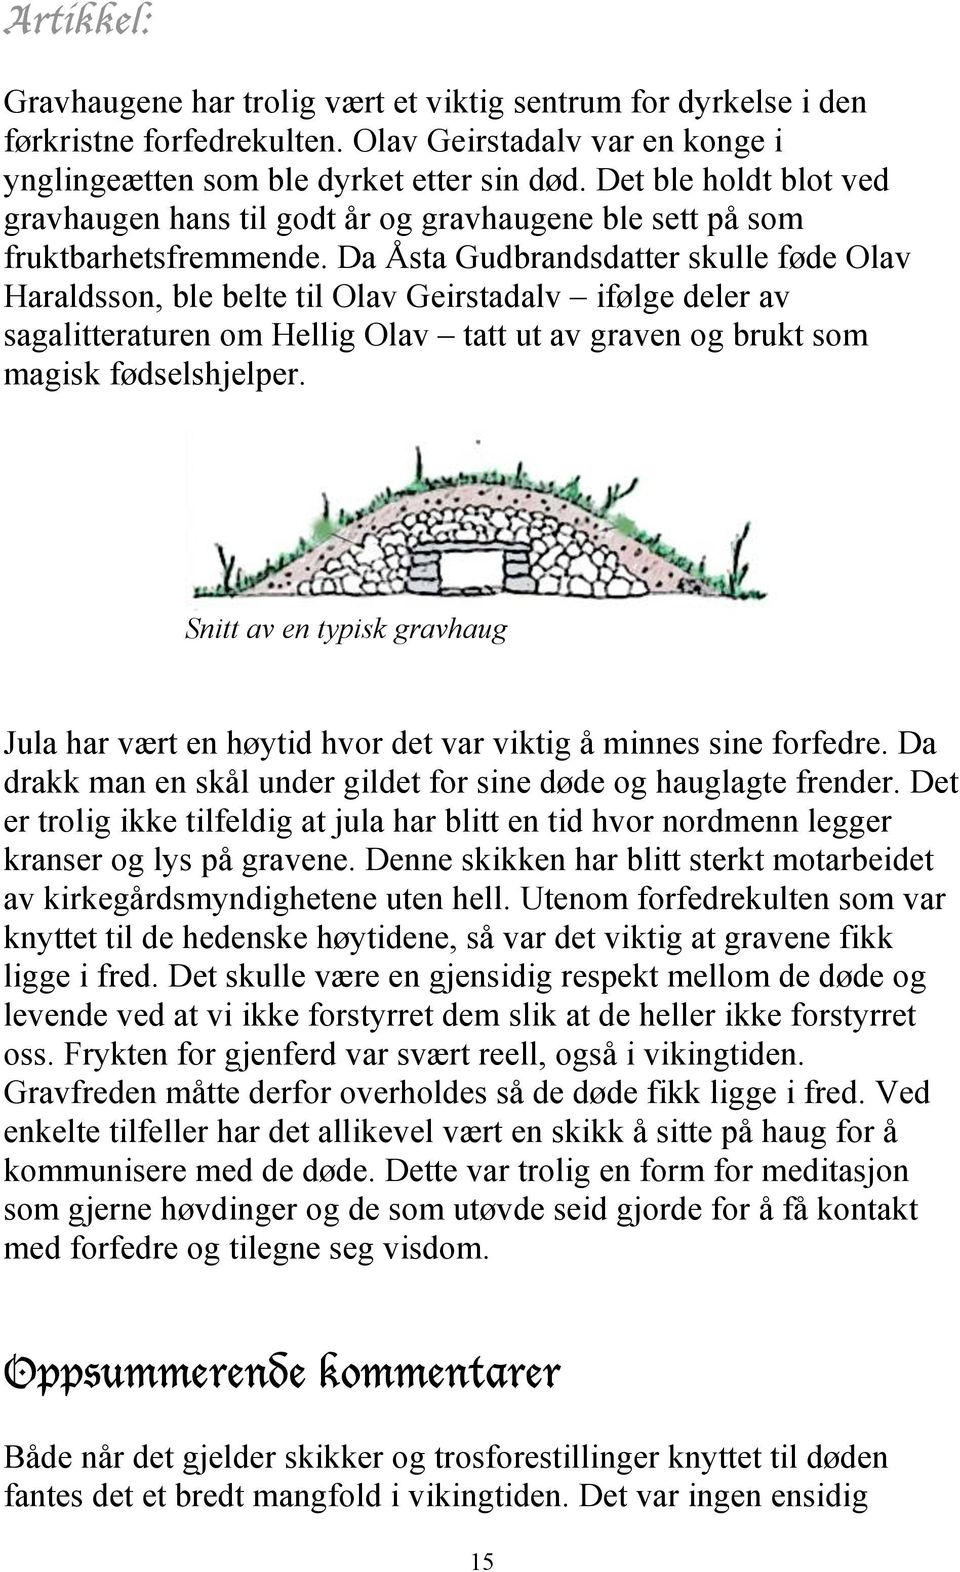 Da Åsta Gudbrandsdatter skulle føde Olav Haraldsson, ble belte til Olav Geirstadalv ifølge deler av sagalitteraturen om Hellig Olav tatt ut av graven og brukt som magisk fødselshjelper.